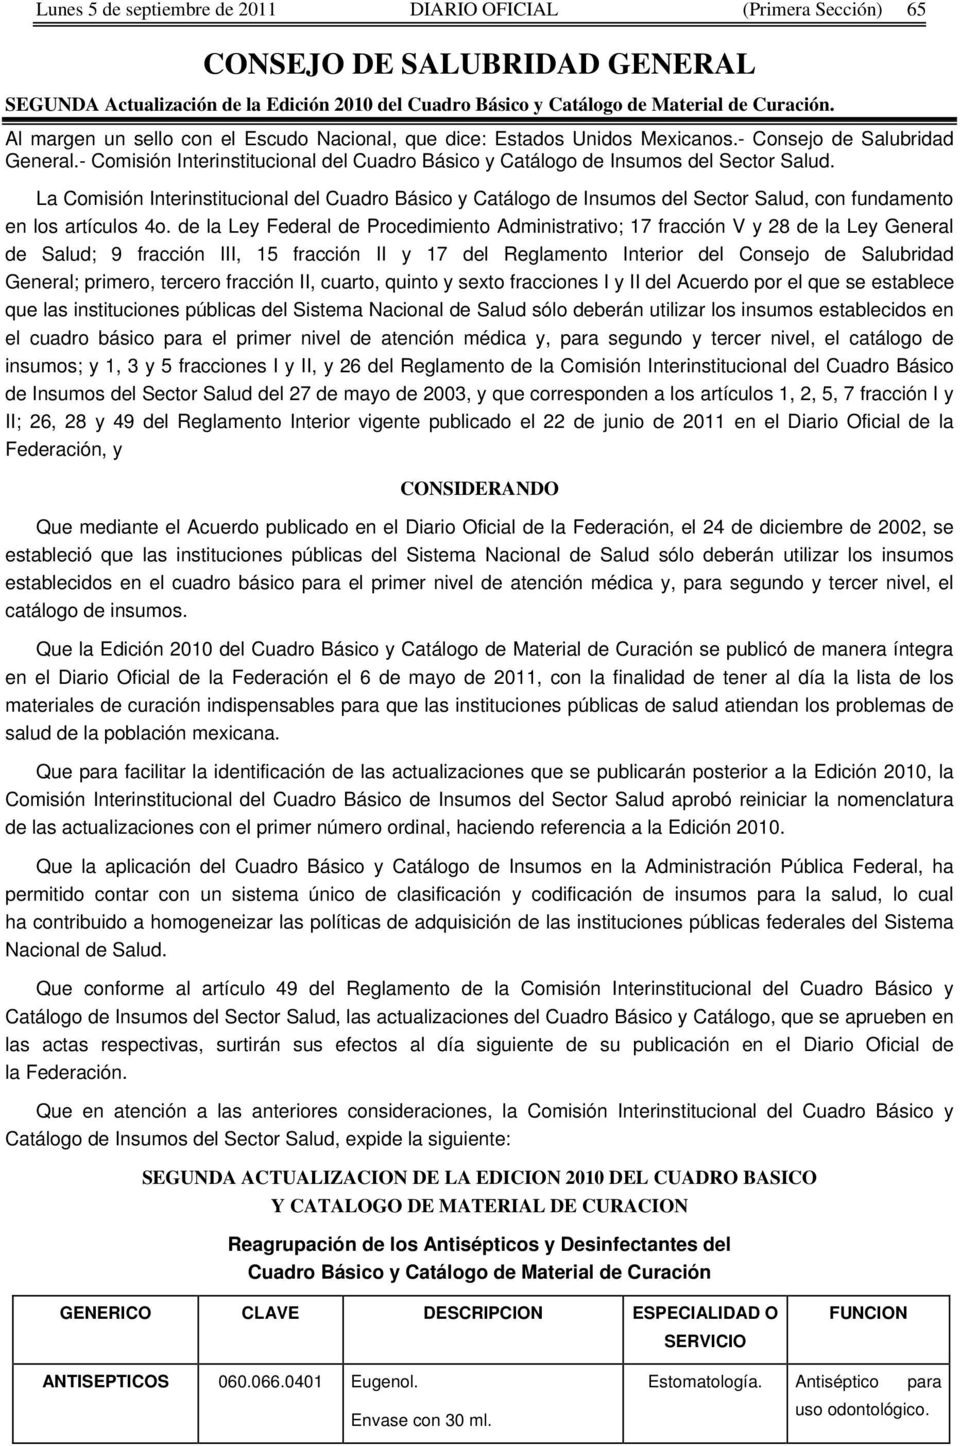 La Comisión Interinstitucional l Cuadro Básico y Catálogo Insumos l Sector Salud, con fundamento en los artículos 4o.